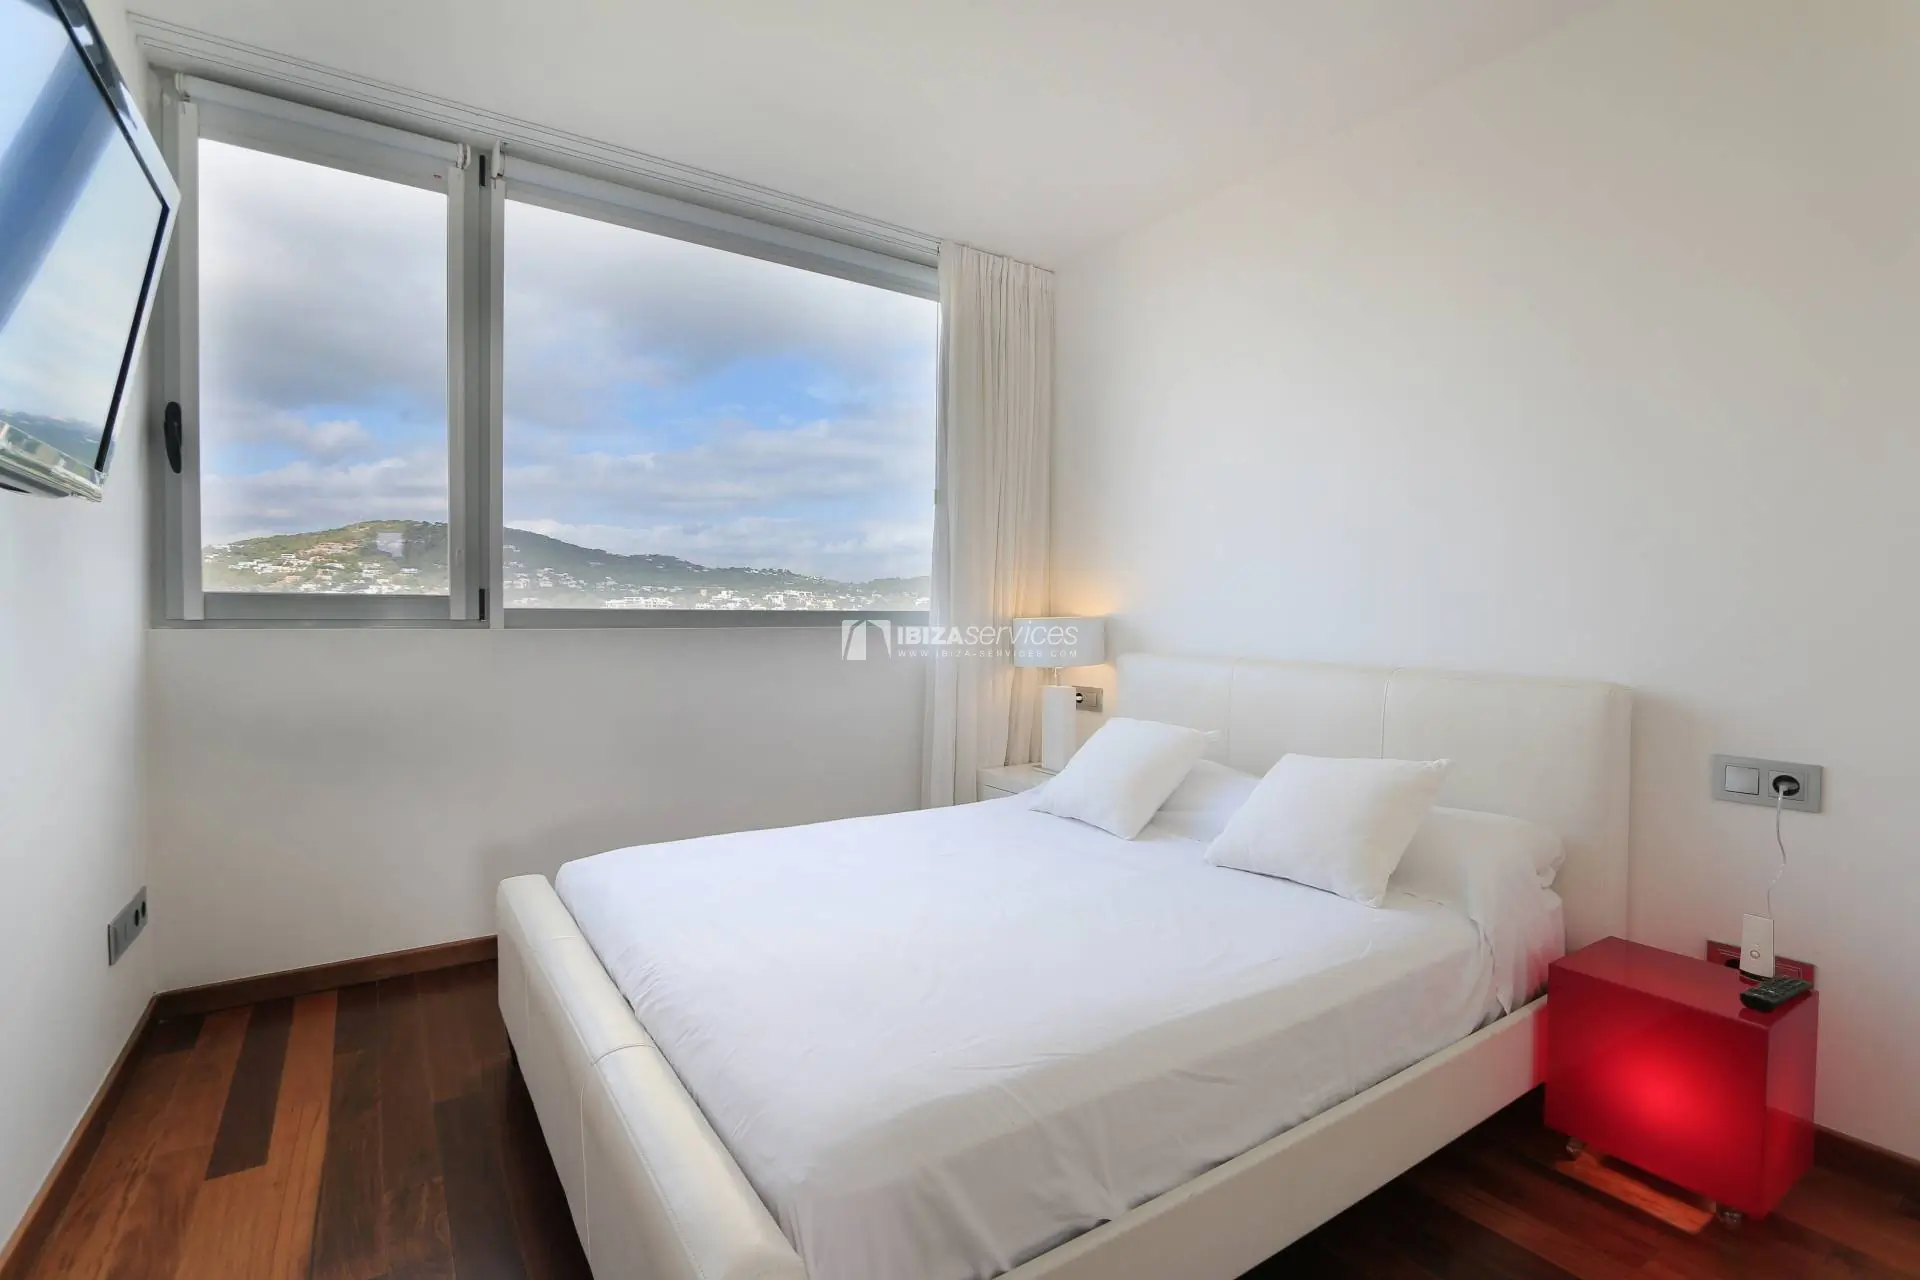 Comprar un apartamento moderno y luminoso de 3 dormitorios Botafoch